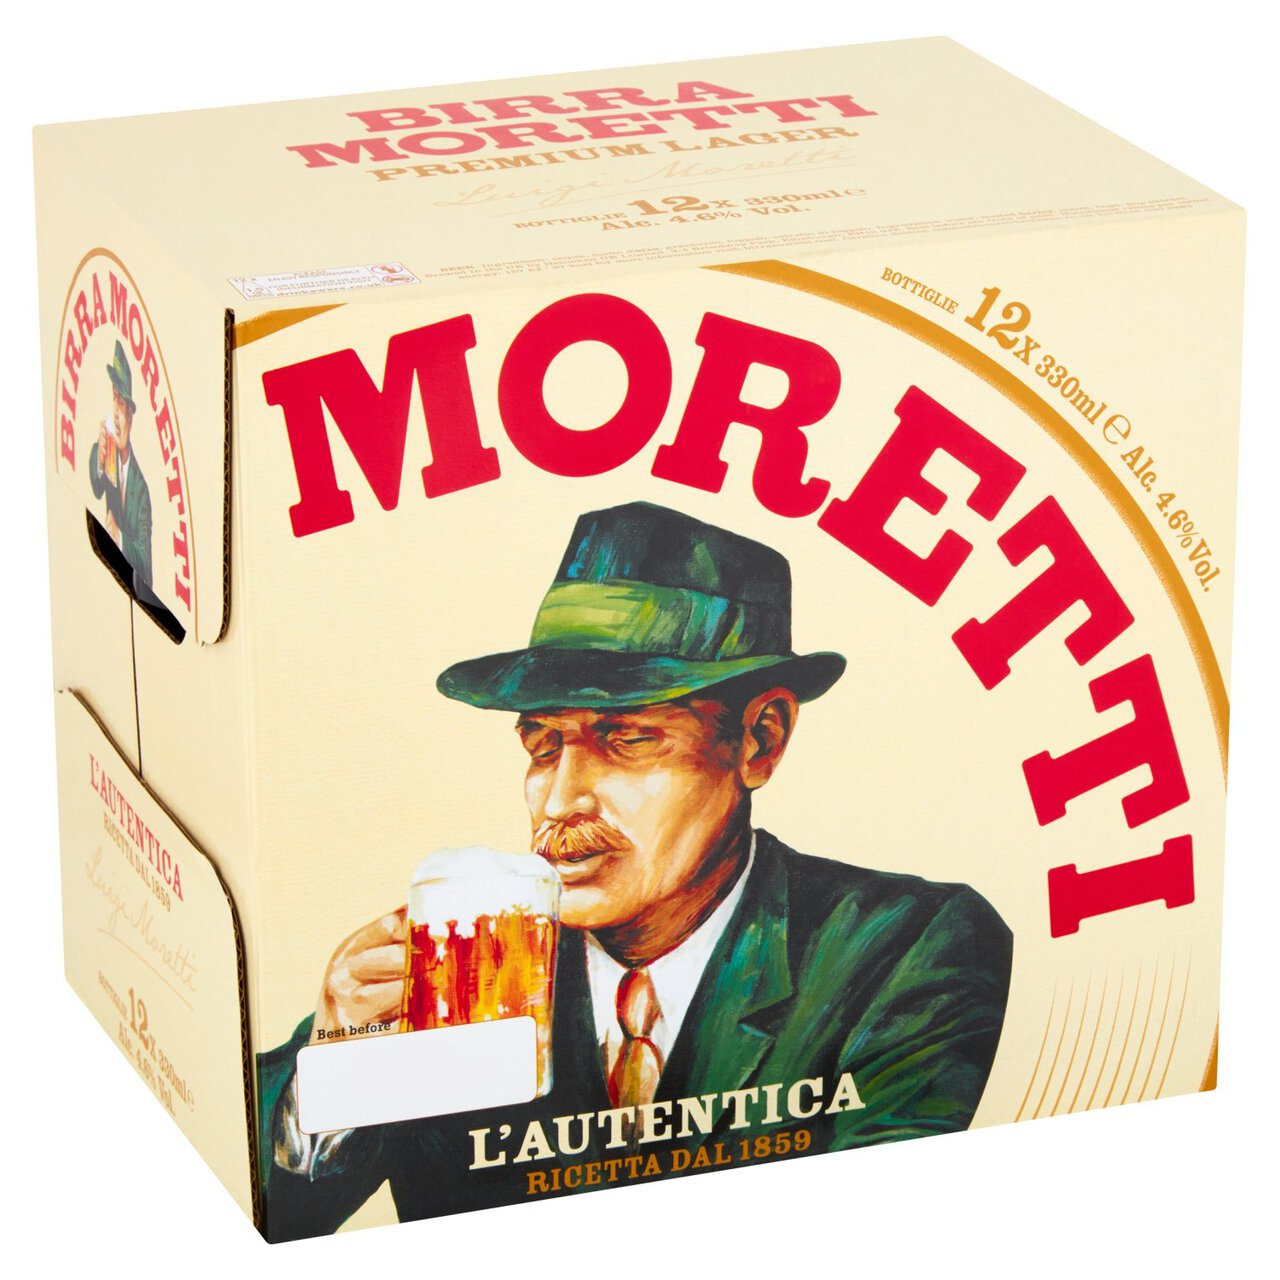 Birra Moretti Lager Beer Bottles 12 x 330ml